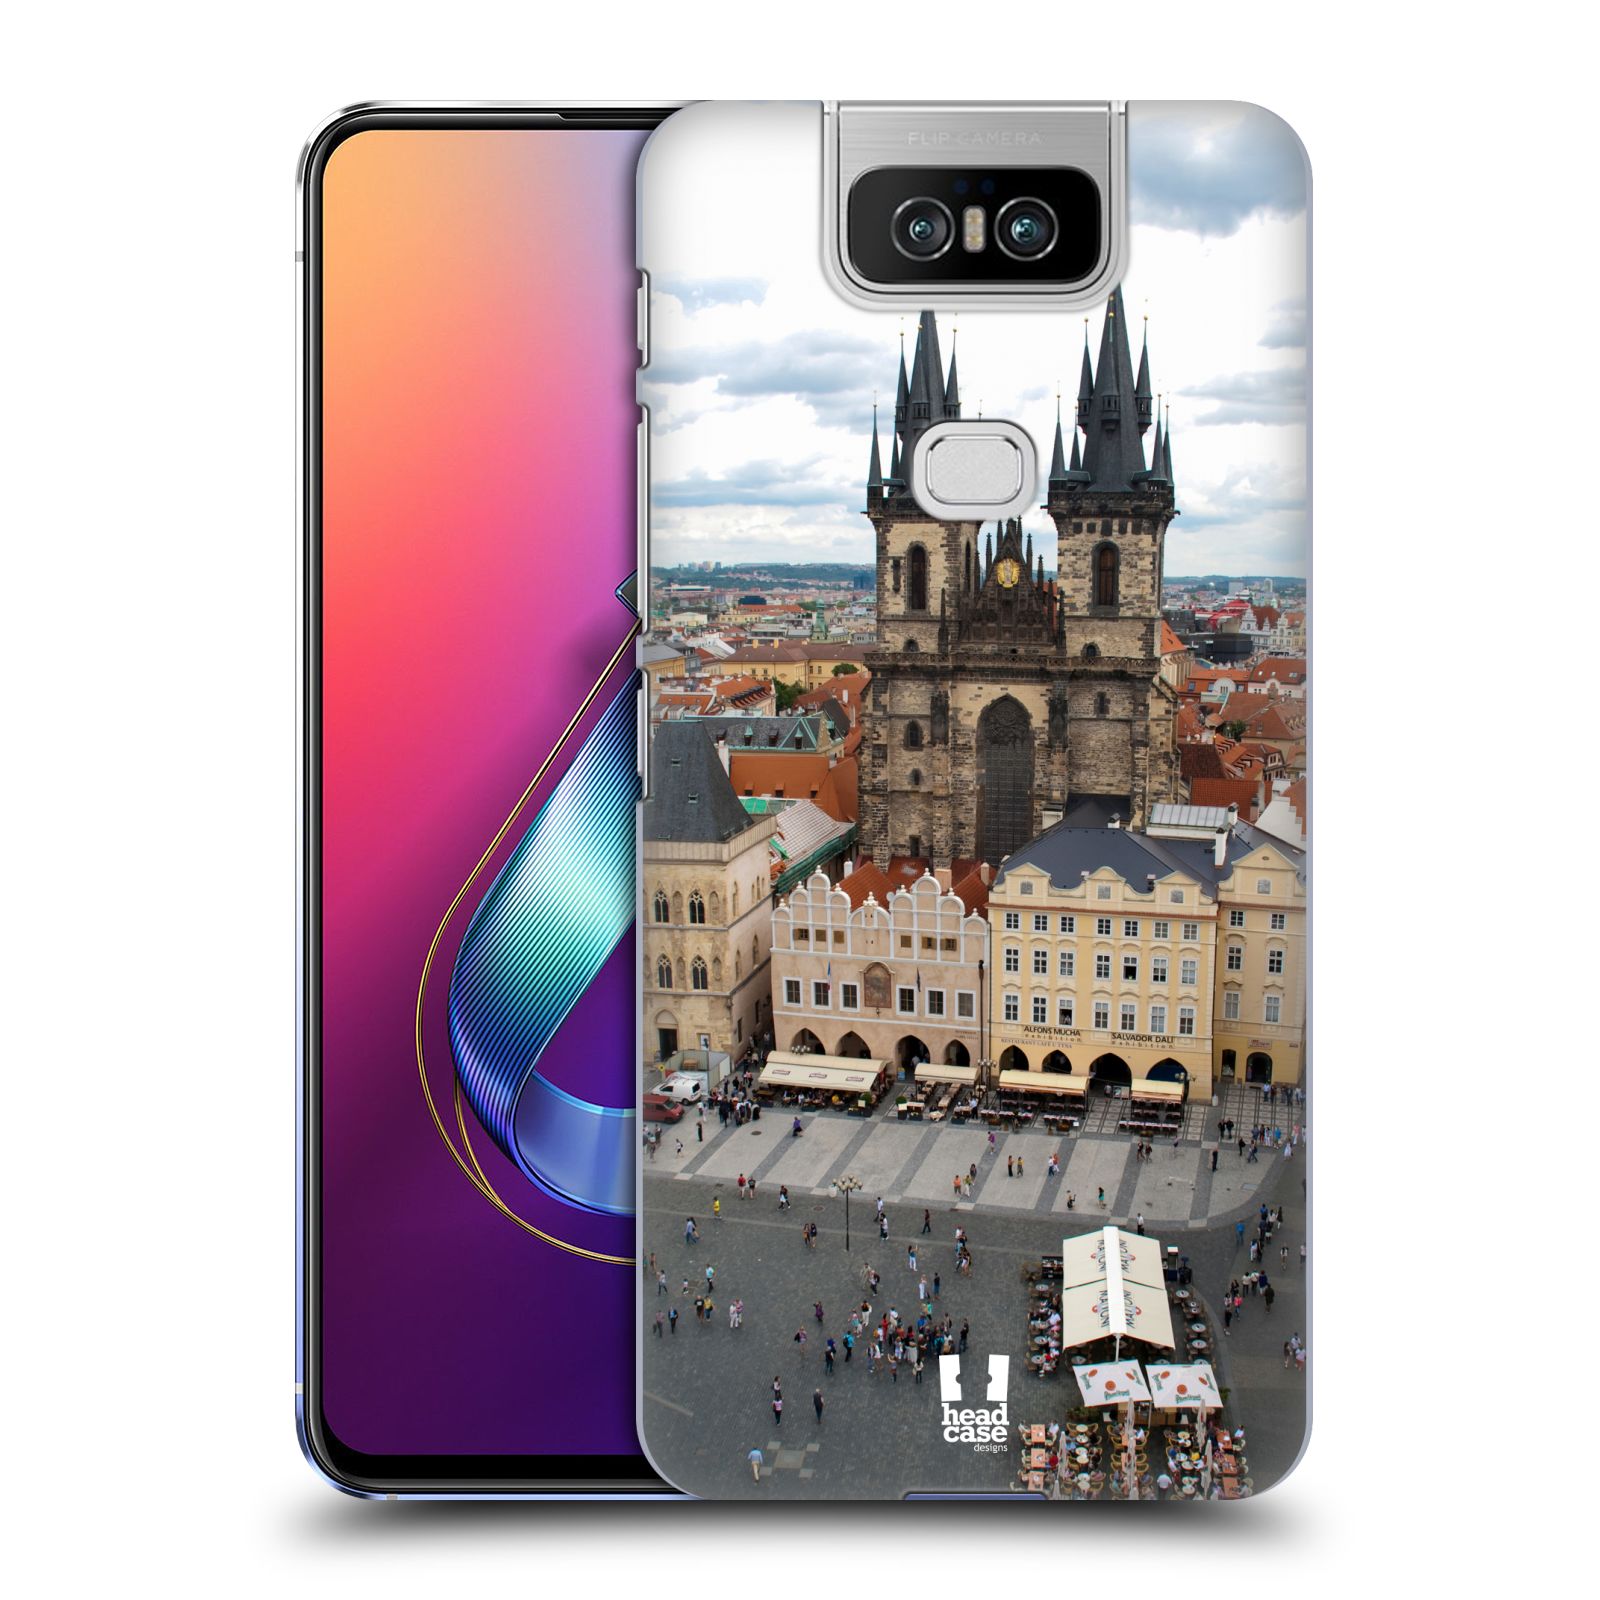 Pouzdro na mobil Asus Zenfone 6 ZS630KL - HEAD CASE - vzor Města foto náměstí ČESKÁ REPUBLIKA, PRAHA, STAROMĚSTSKÉ NÁMĚSTÍ